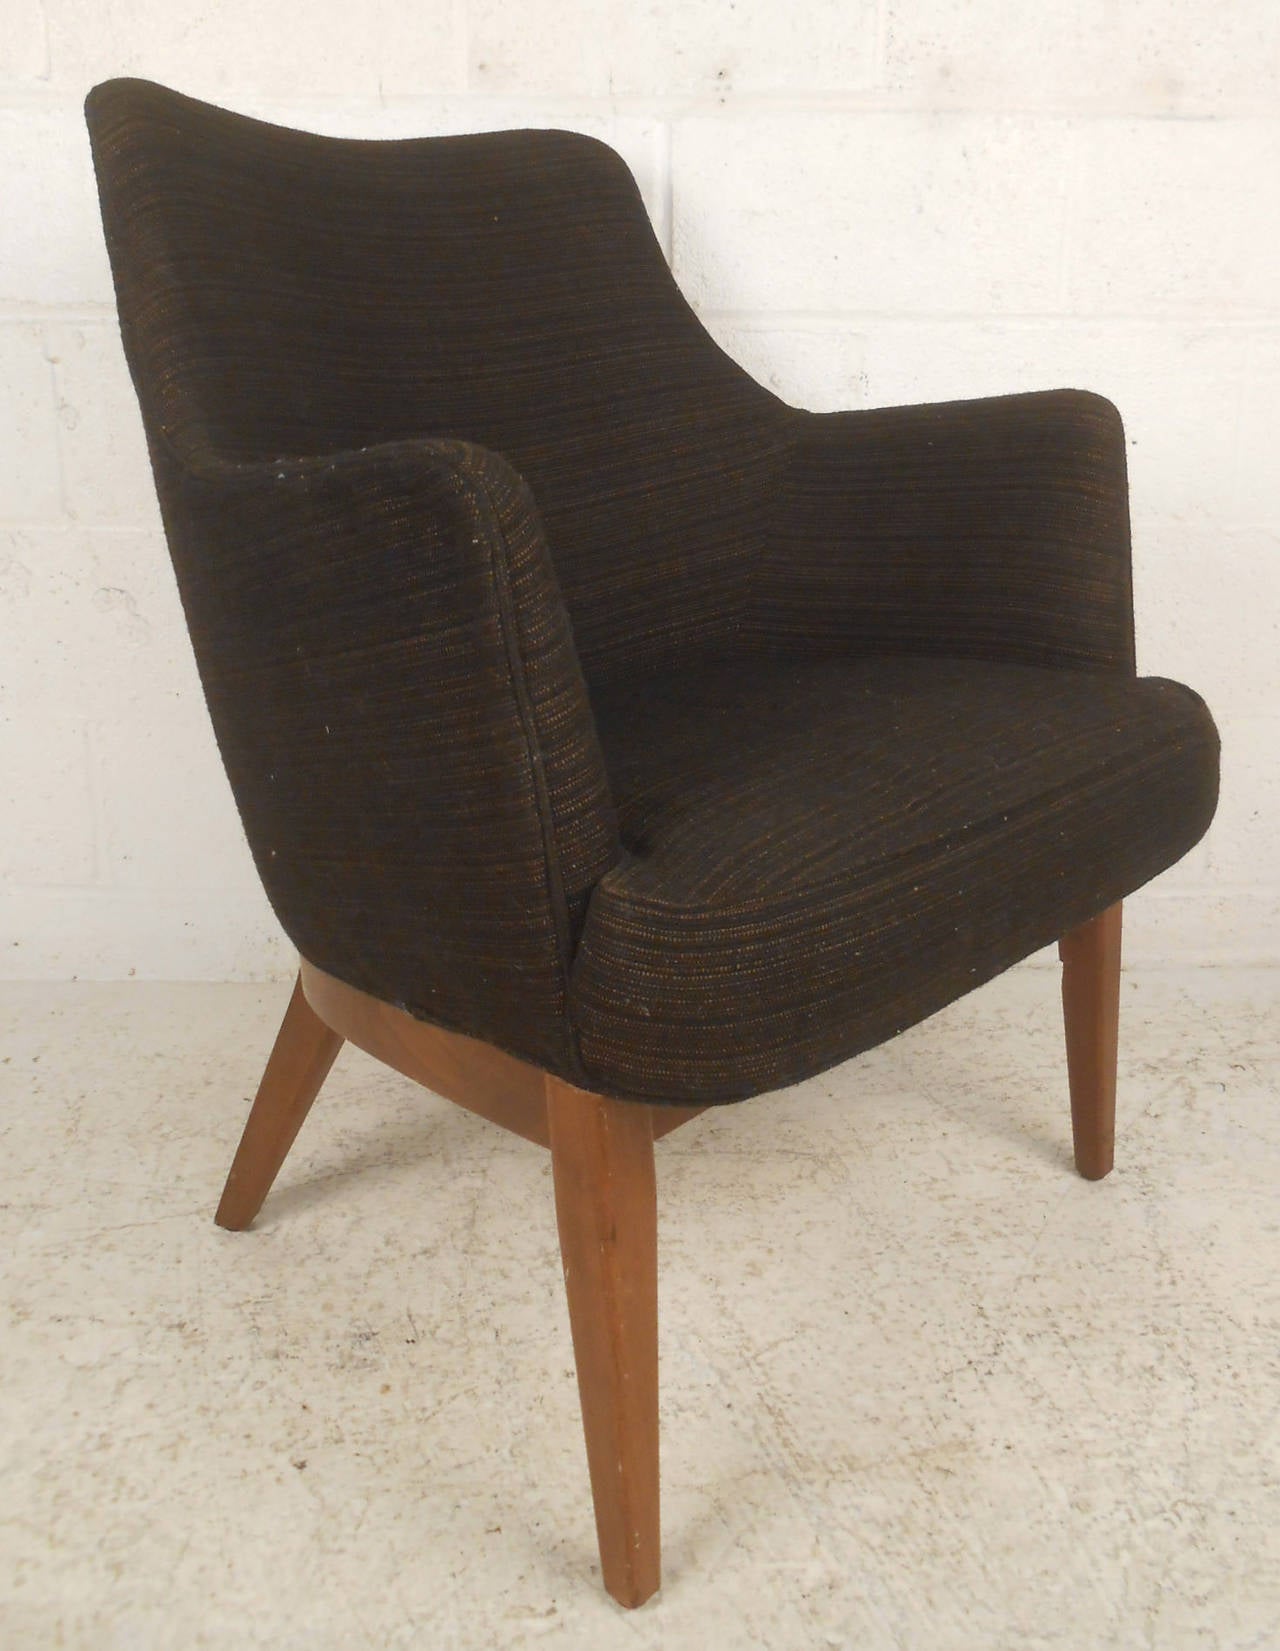 Danish Scandinavian Modern Lounge Chair after Mogens Lassen